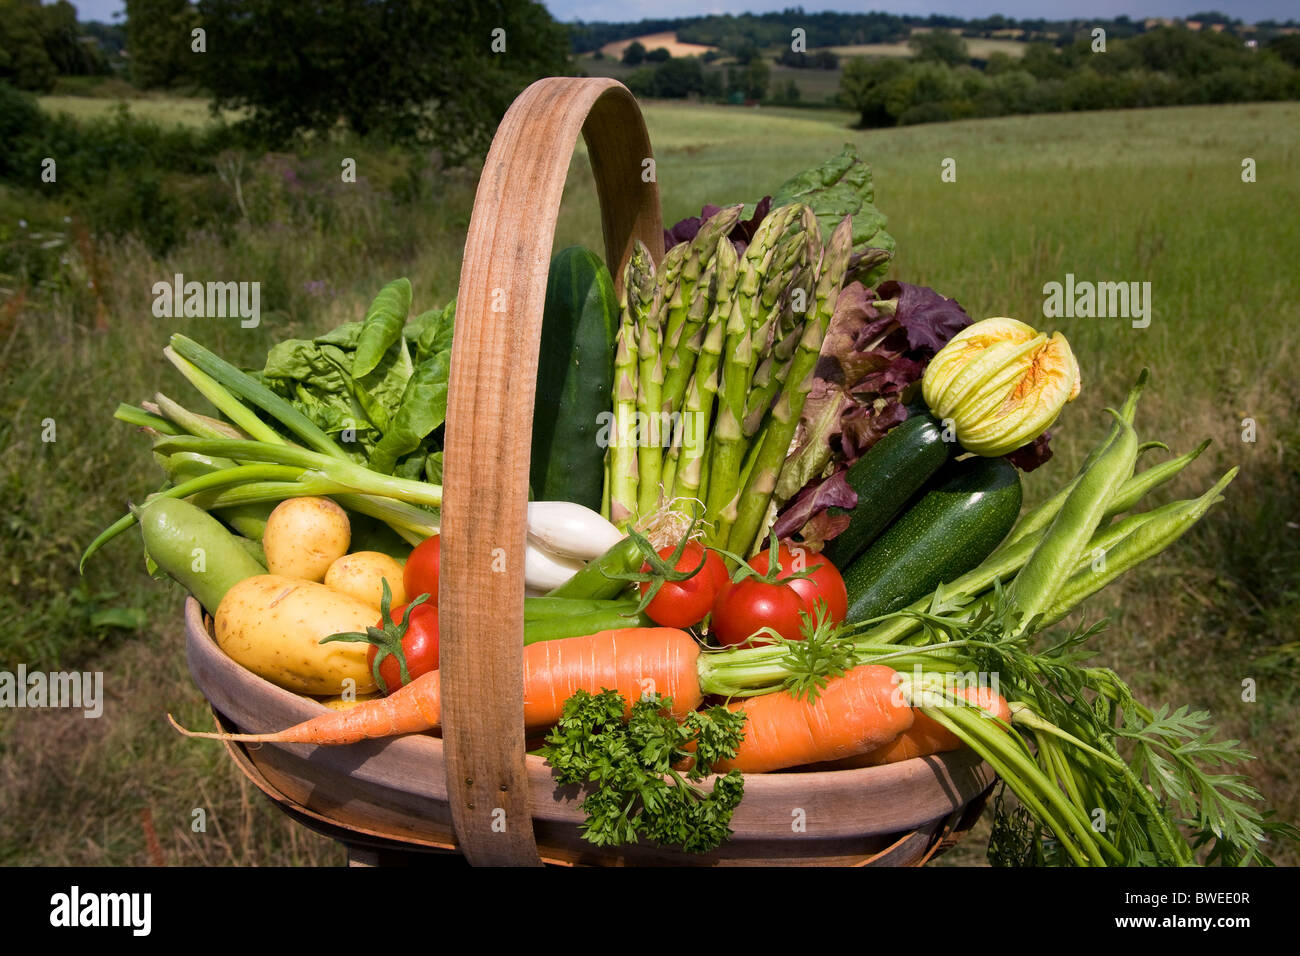 Colorido trug de verano británico verduras cultivadas localmente en paisaje de interior campos woods Valley en el Weald de Kent, Reino Unido Foto de stock